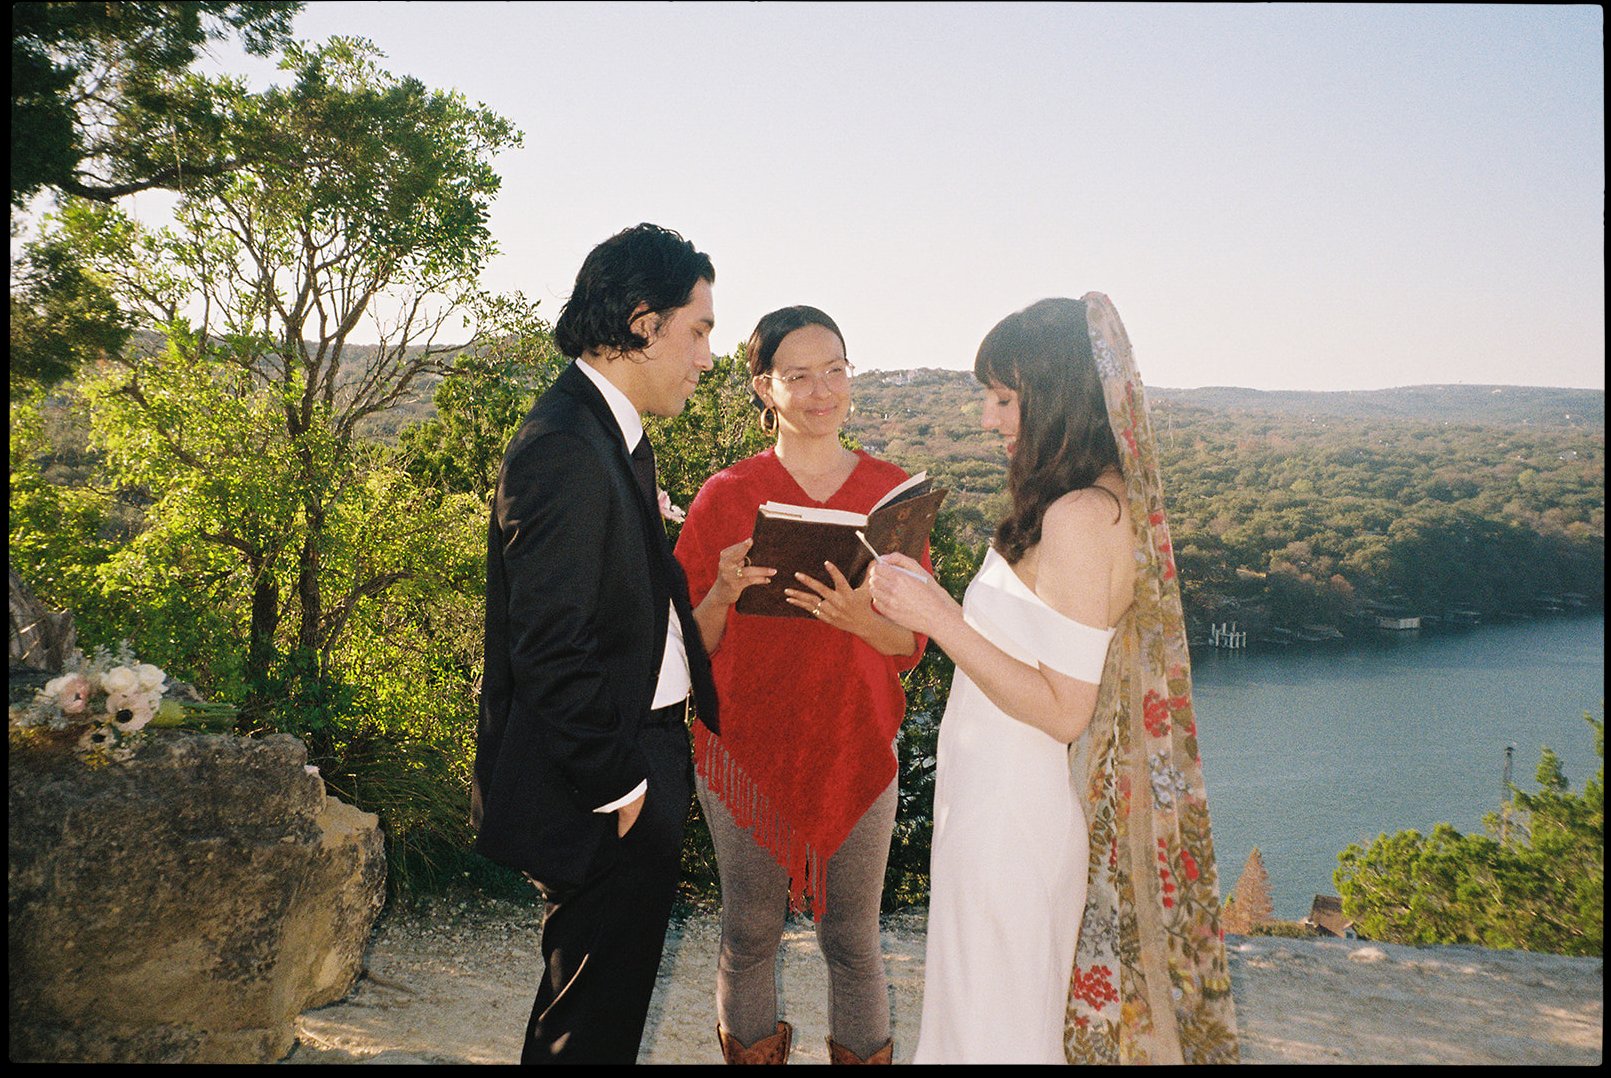 Best-Austin-Wedding-Photographers-Elopement-Film-35mm-Asheville-Santa-Barbara-Laguna-Gloria-12.jpg